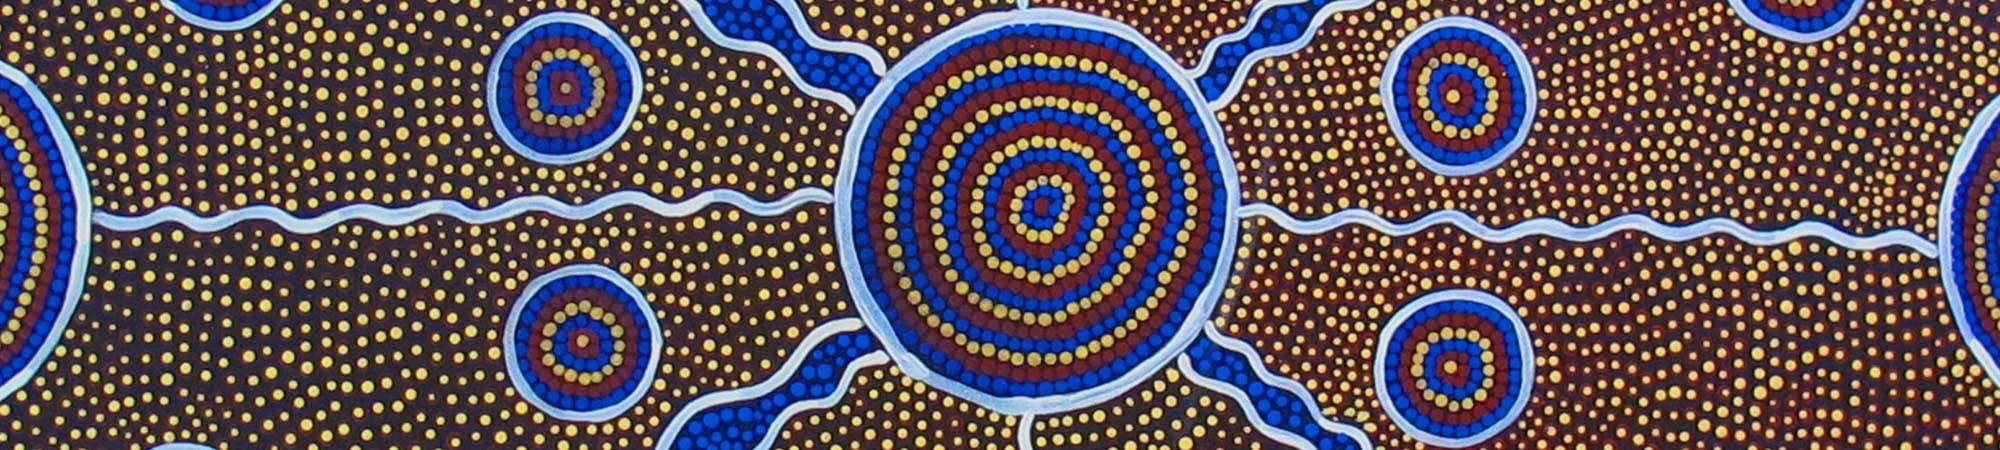 Aboriginal artwork banner